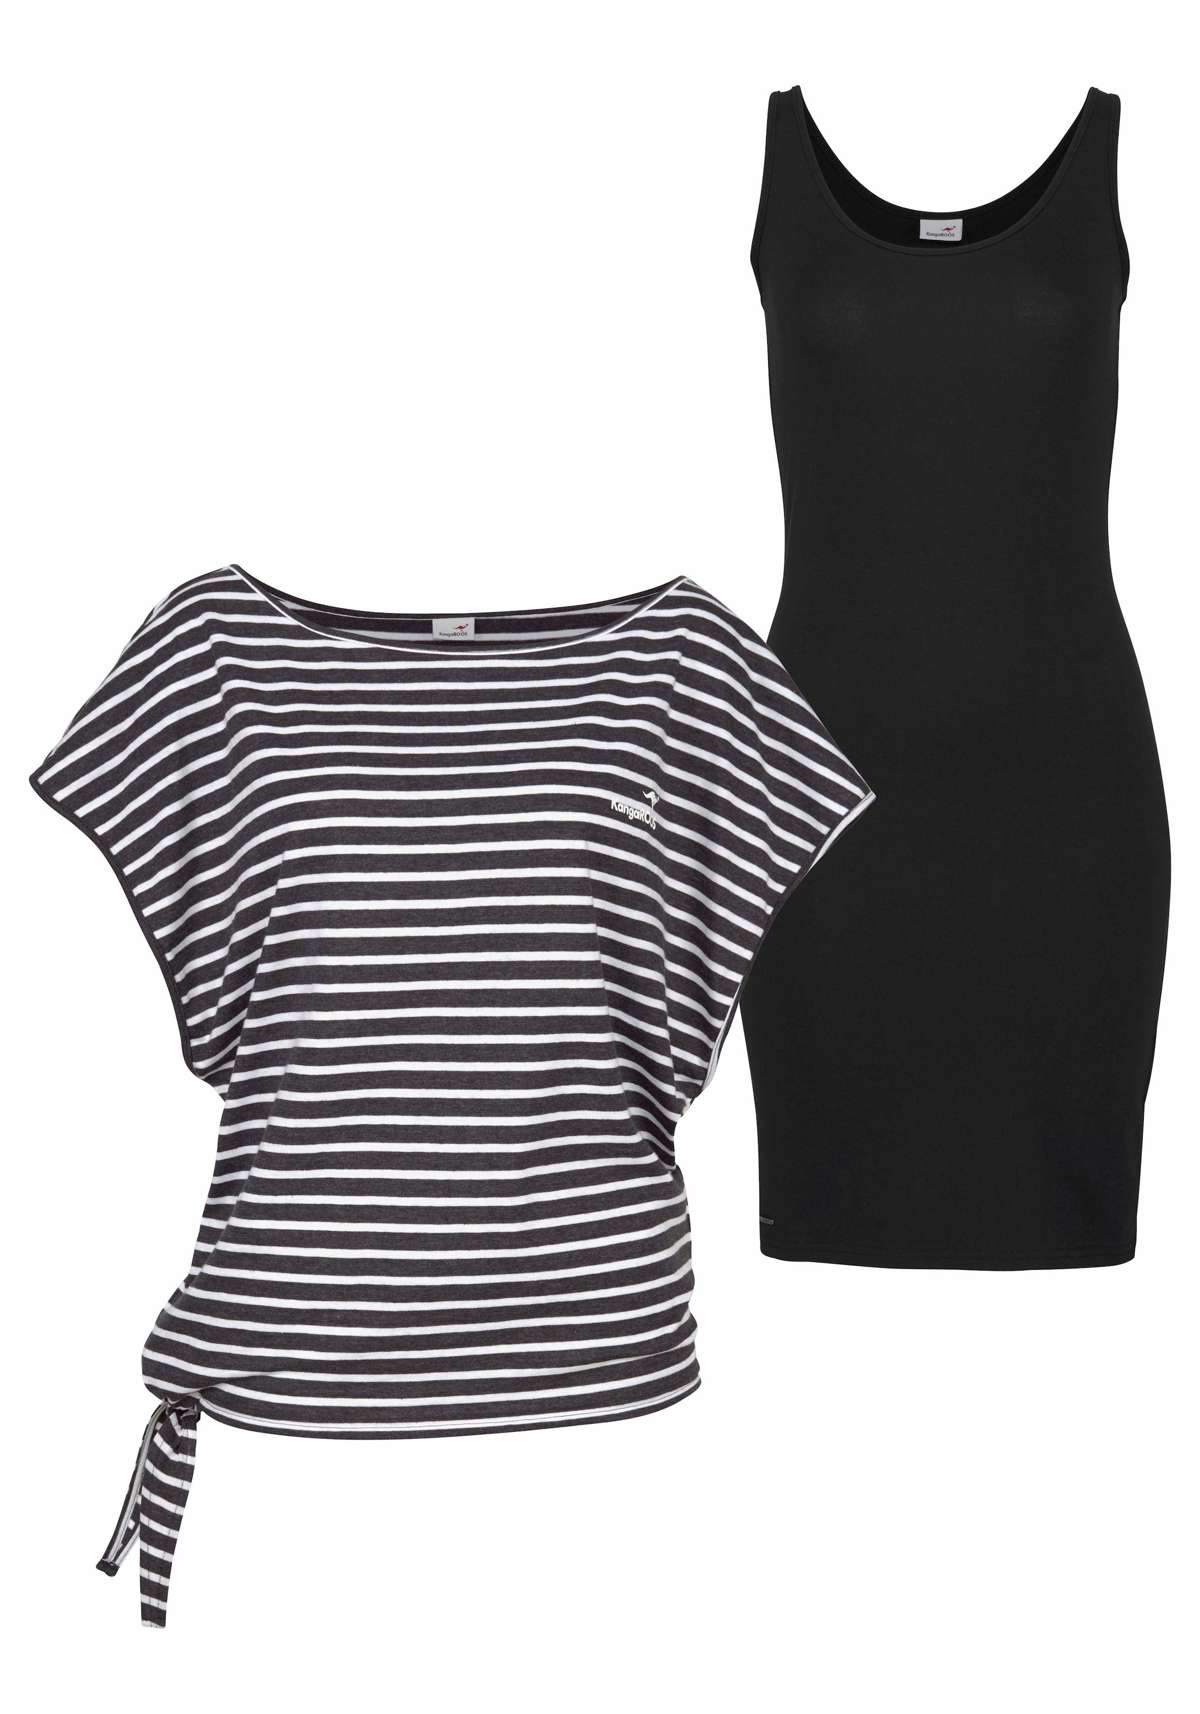 Платье из джерси (комплект, 2 шт., с футболкой) для летнего комбинированного образа